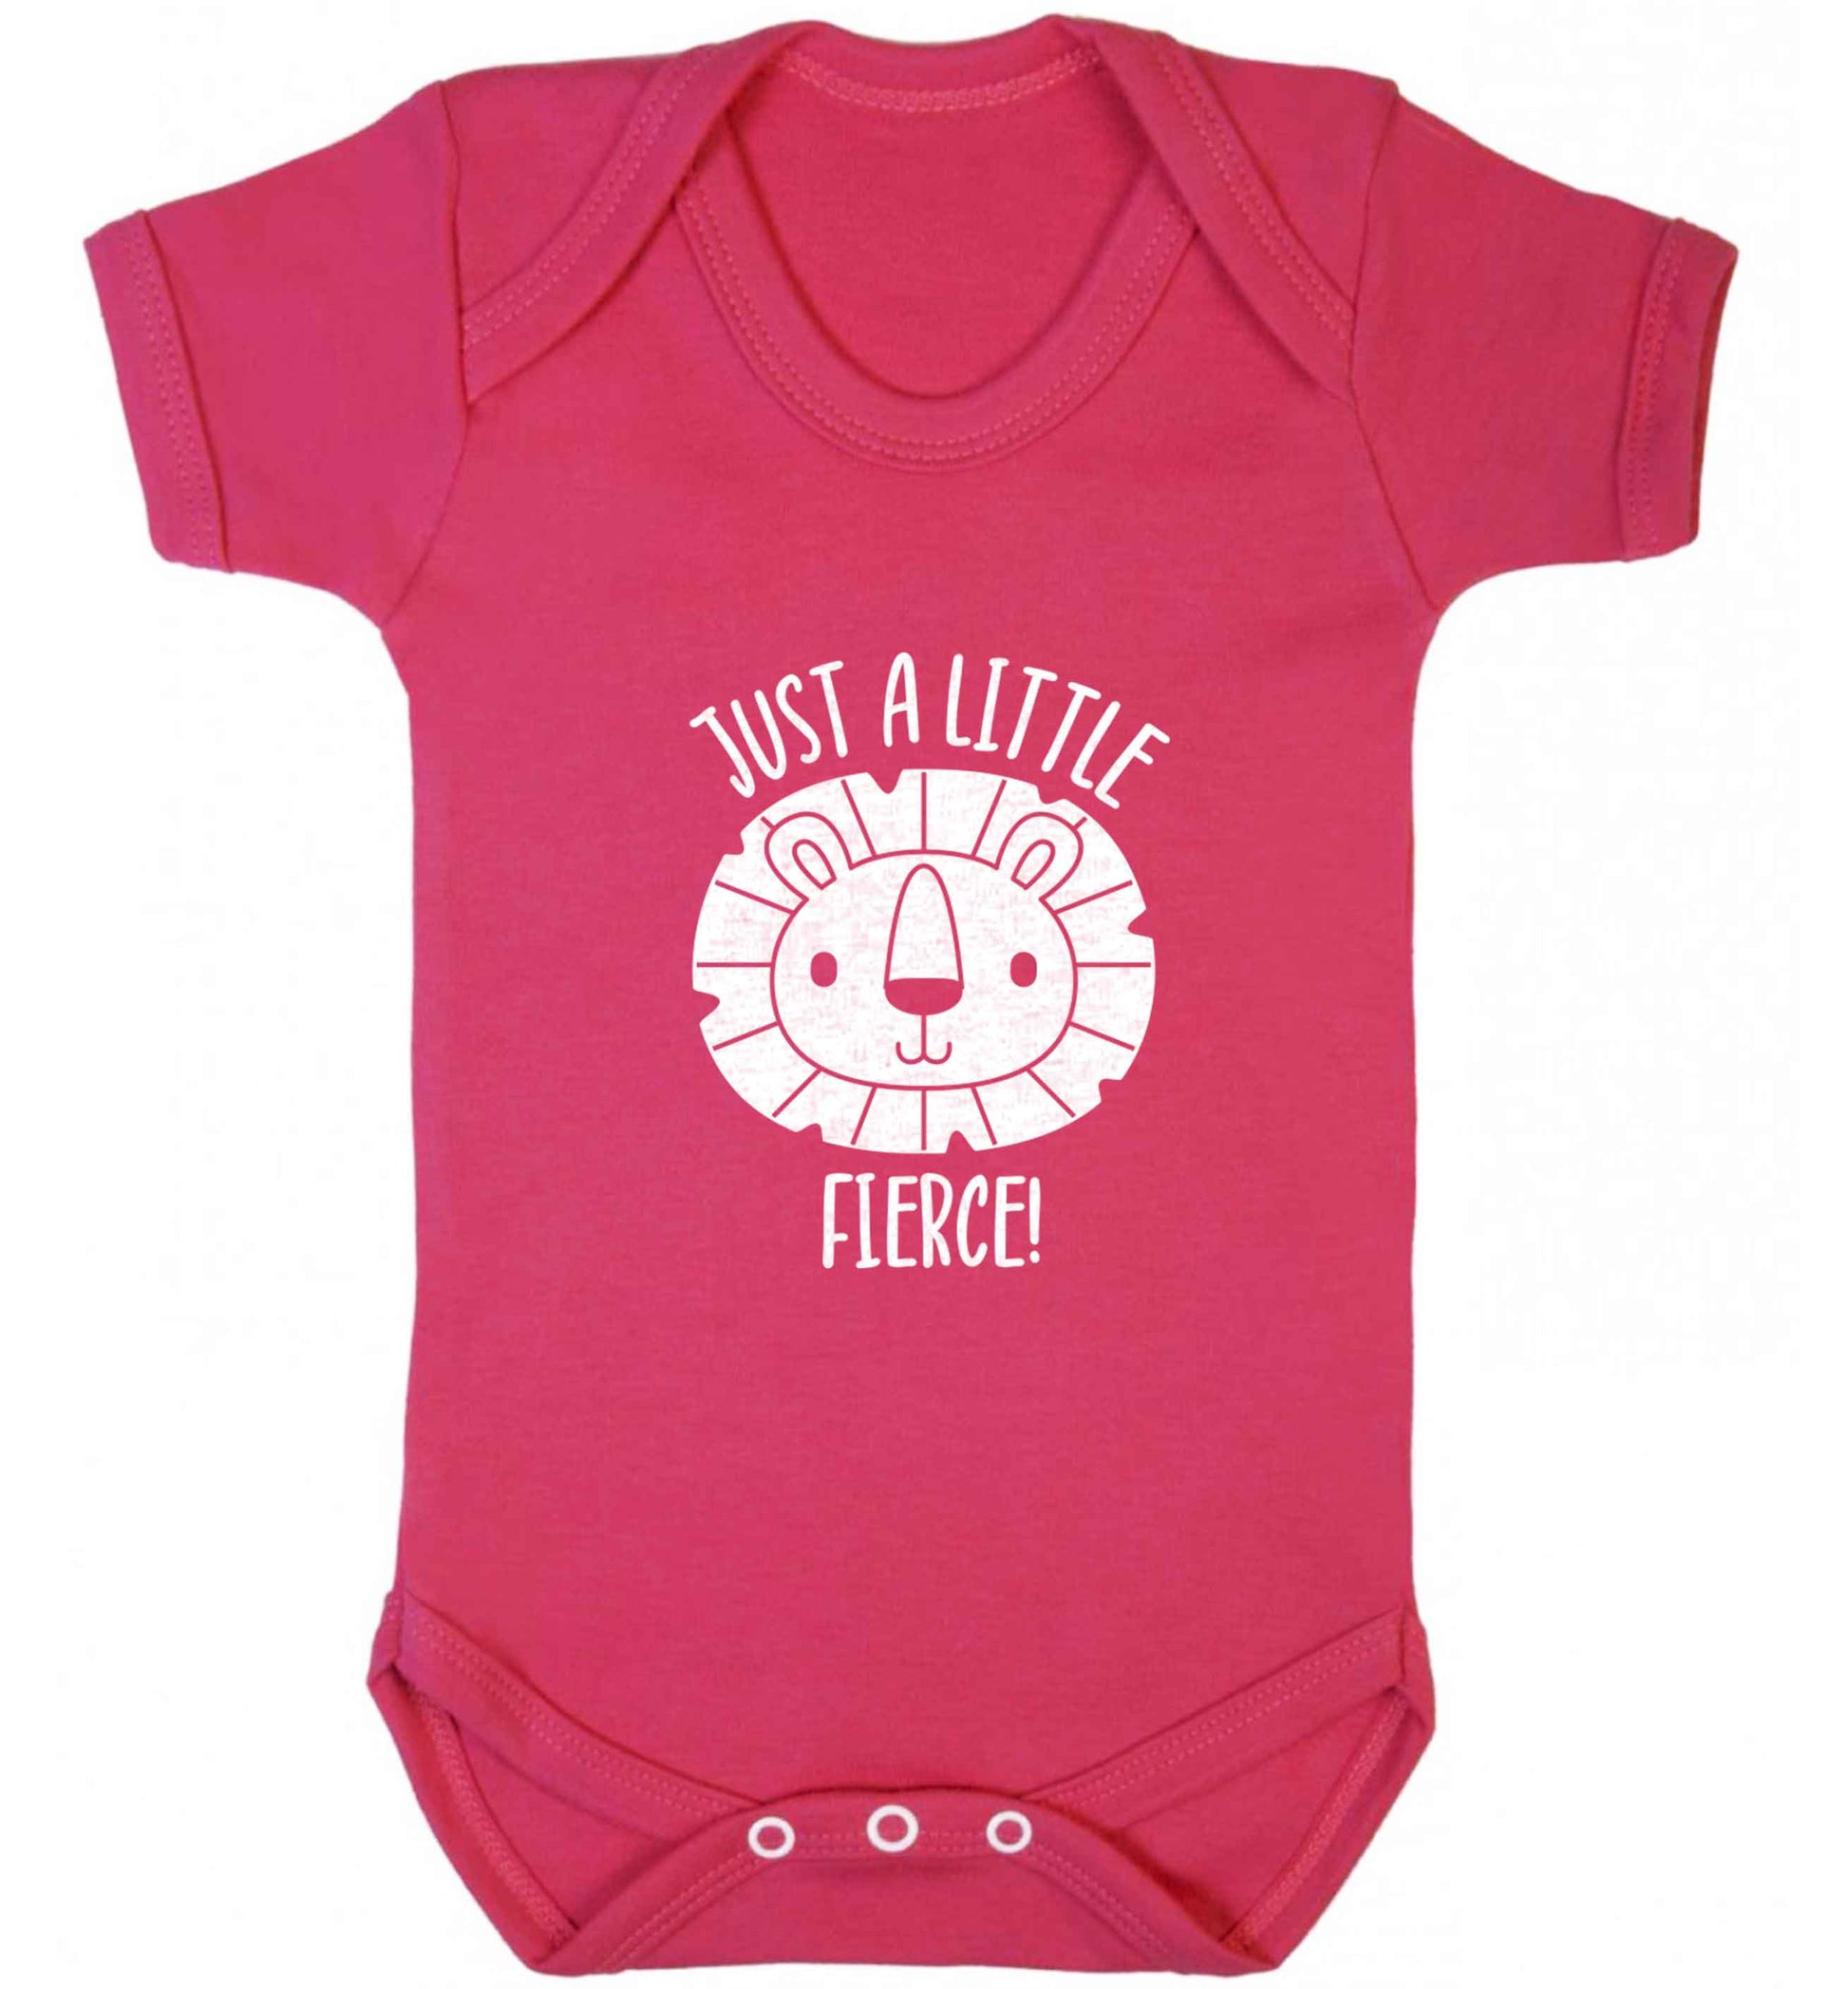 Just a little fierce baby vest dark pink 18-24 months